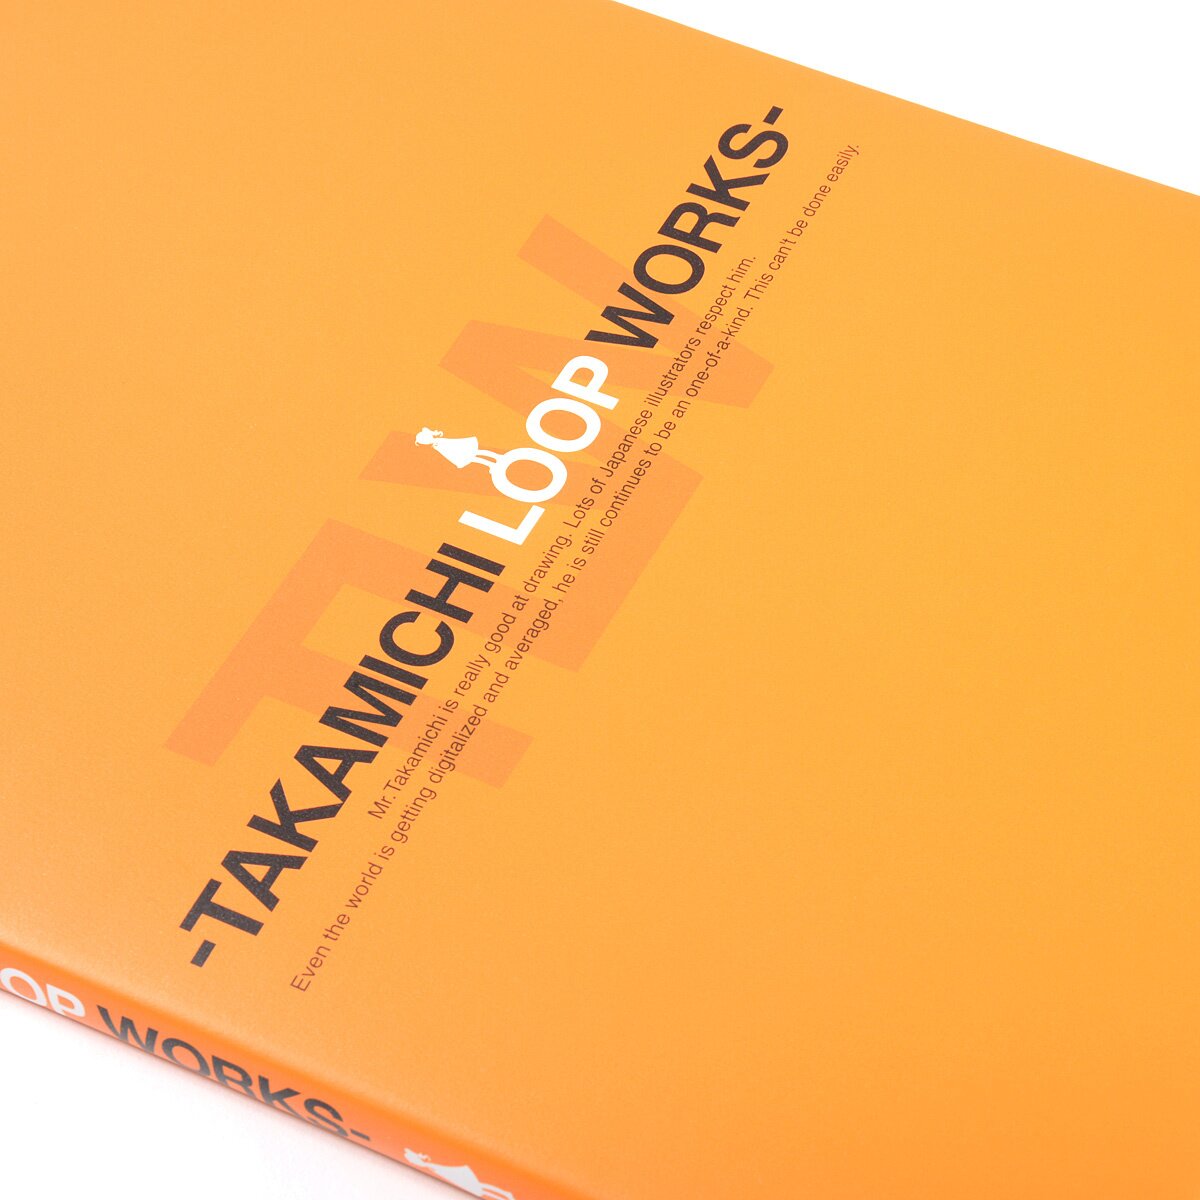 LO Art Book Vol. 2: Takamichi Loop Works